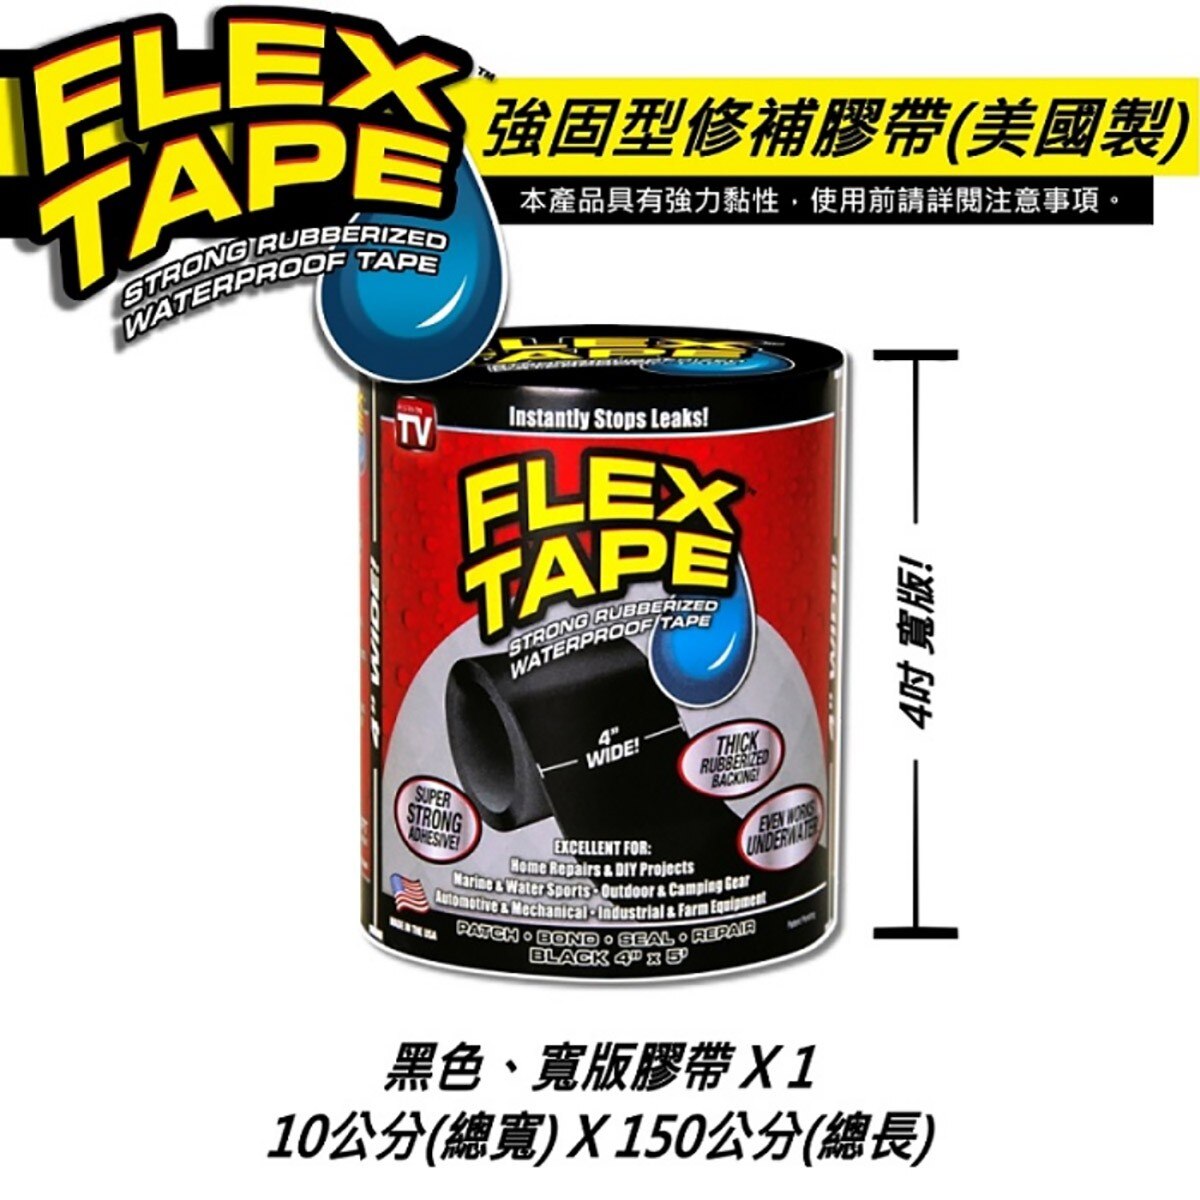 美國FLEX TAPE強固型修補膠帶 4吋寬版(黑色)完全防水，水底下保有完整黏性，貼合止漏，瞬間密封，超強黏性適用多種表面材質。特殊橡膠材質，抗曬不劣化，抗擠壓、拉扯。